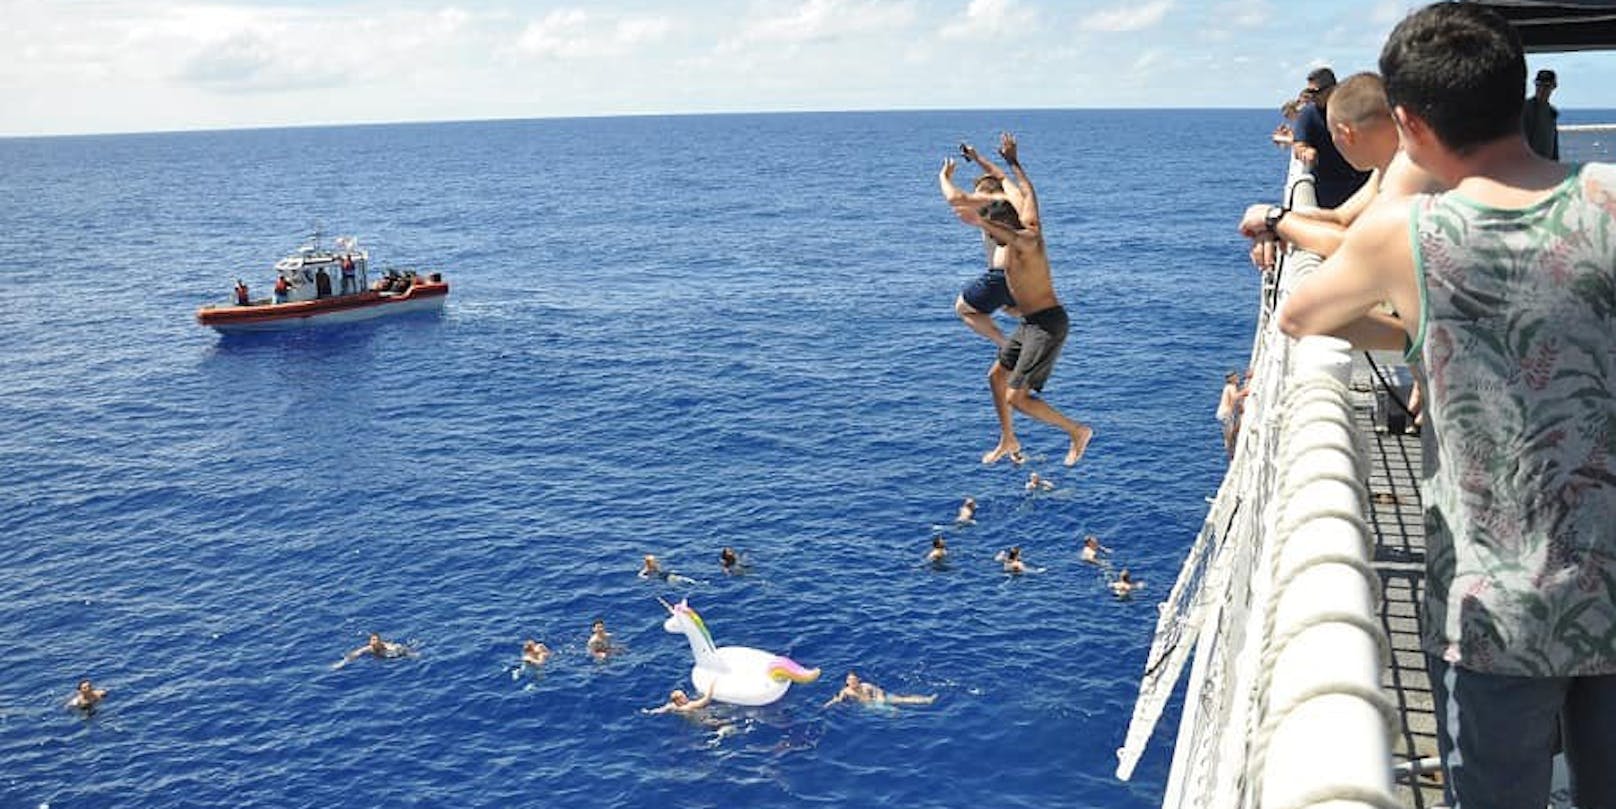 Bei einem Badegang im Pazifischen Ozean wurden Besatzungsmitglieder eines Schiffes der US-Küstenwache letzte Woche von einem Hai angegriffen.